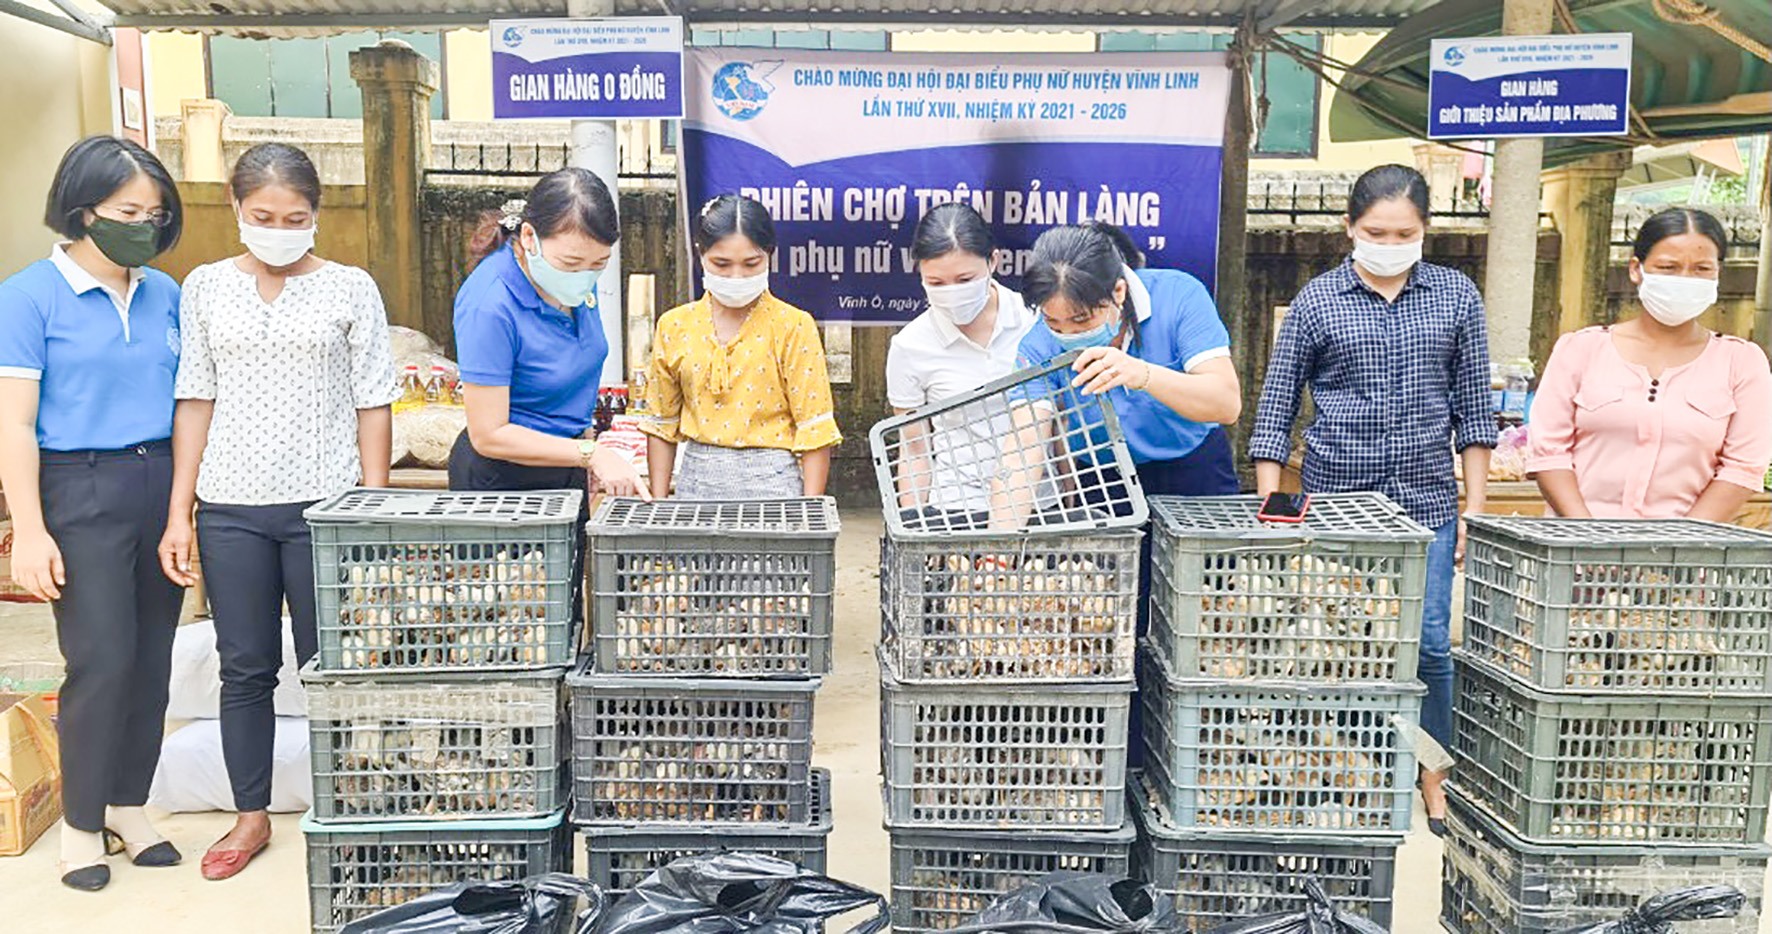 Trao mô hình gà giống cho hội viên phụ nữ khó khăn tại phiên chợ-Ảnh: Nguyễn Trang